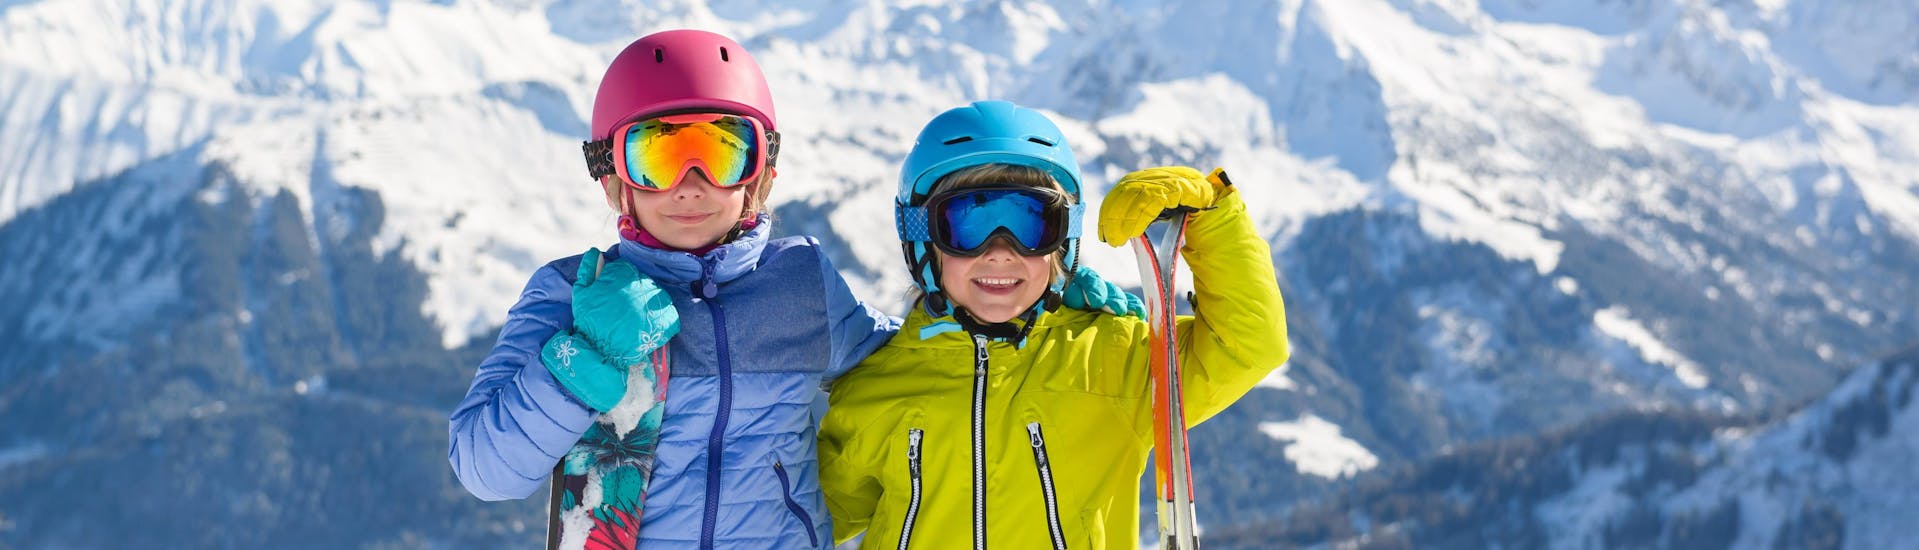 Twee kinderen in complete ski uitrusting glimlachen voor de camera terwijl ze zich voorbereiden op hun kinderskilessen boven op de berg.